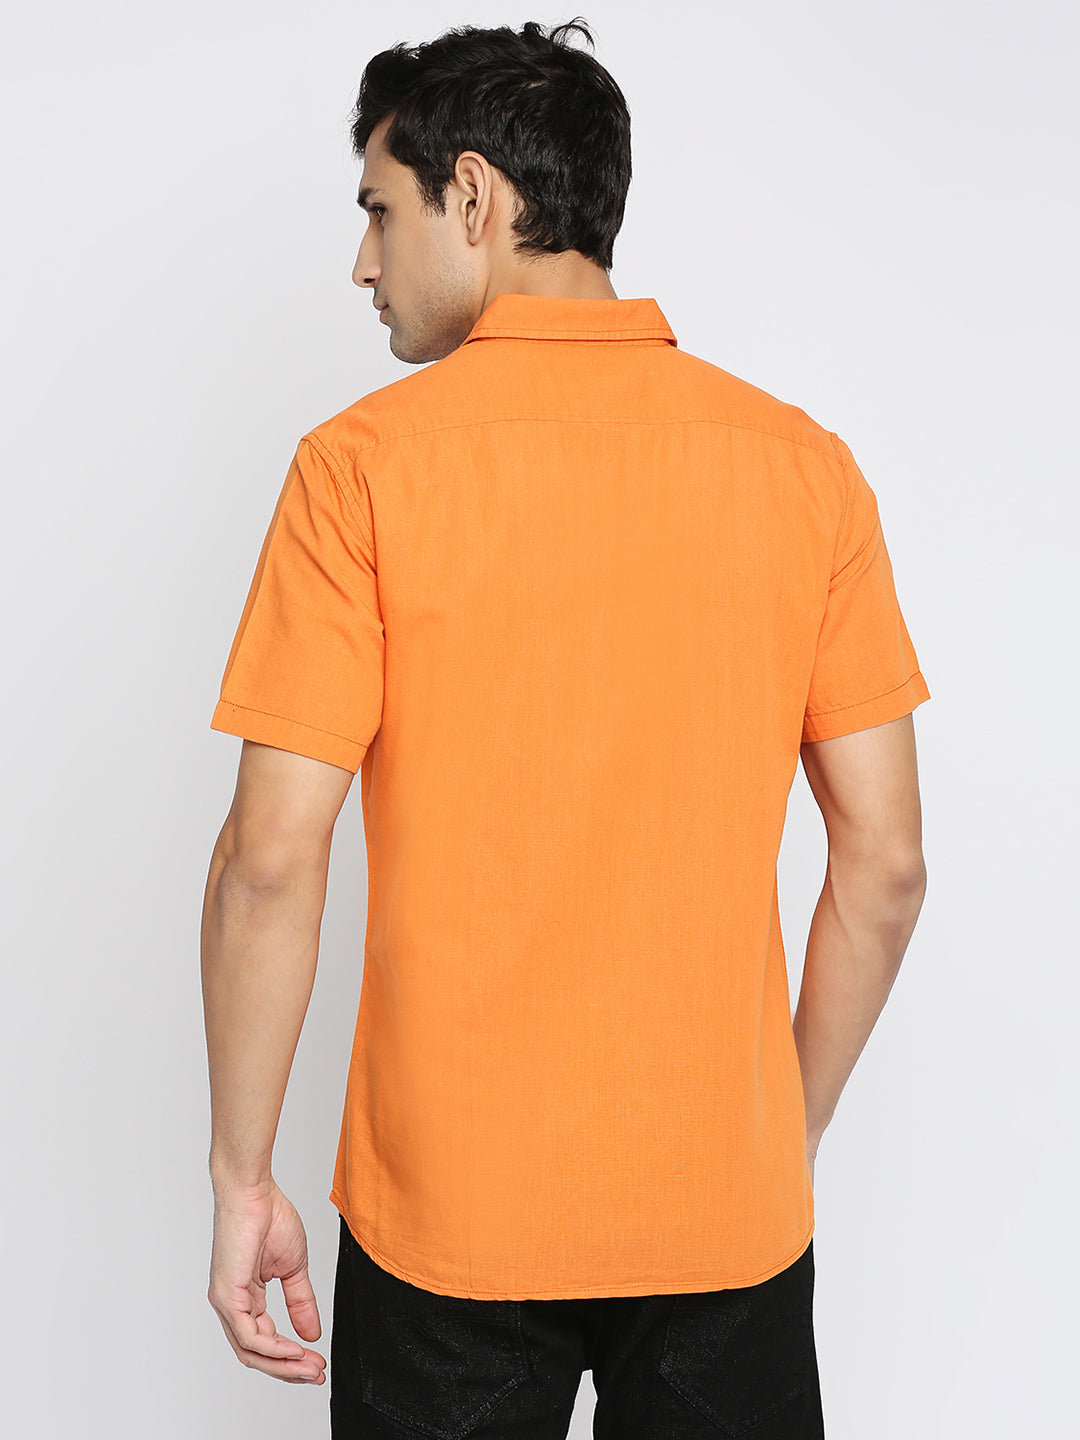 Absolute Linen Cotton Orange Slim Fit Shirt